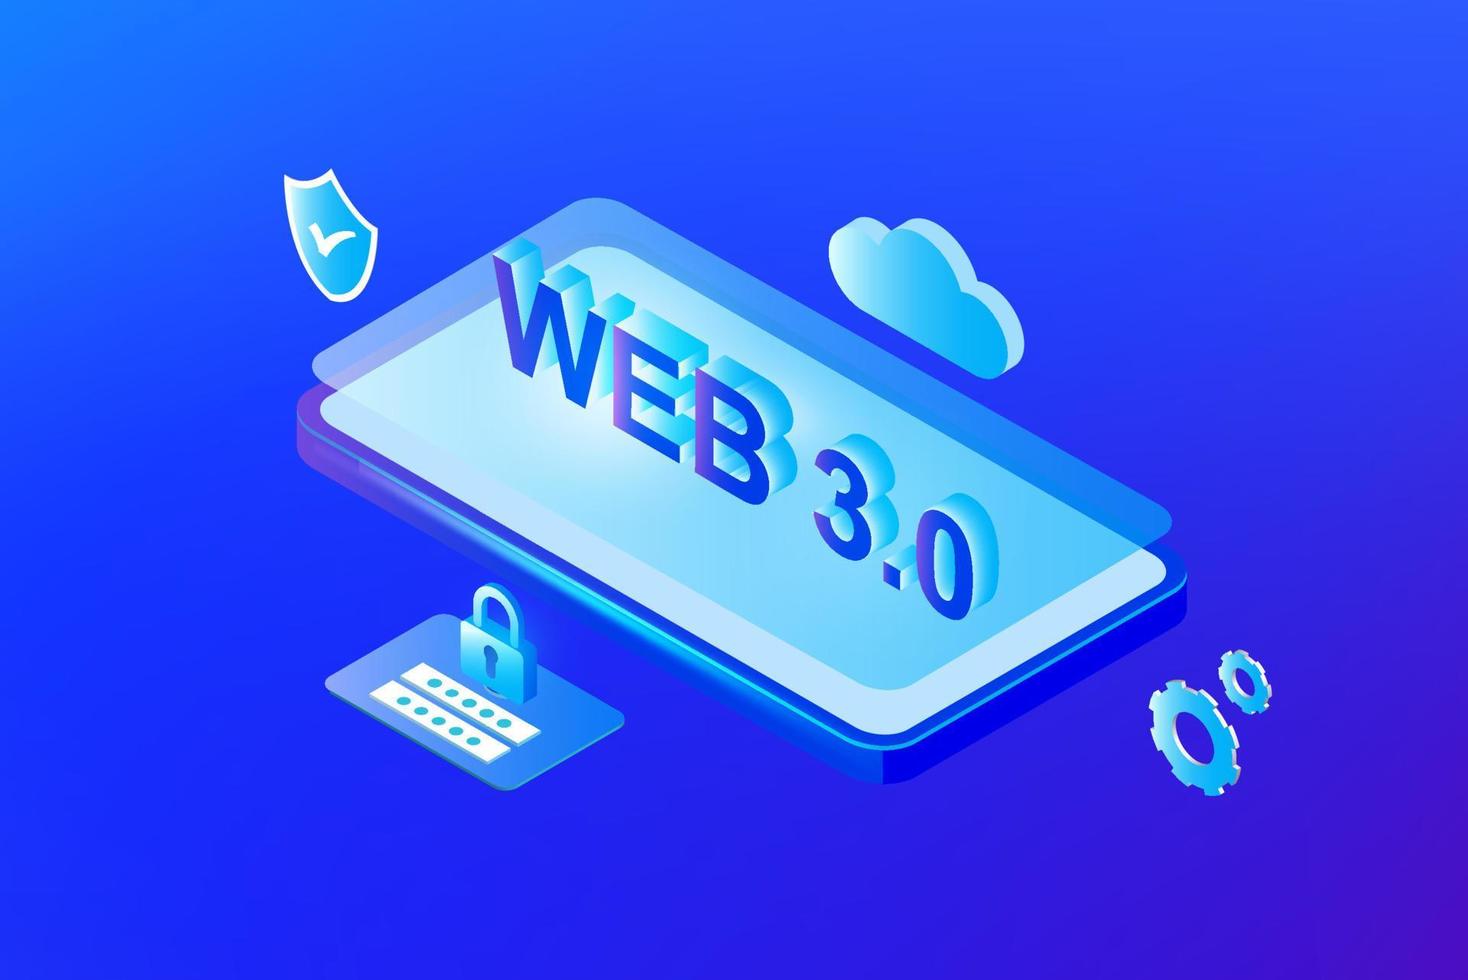 Web 3.0-Konzept, Menschen, die ein mobiles Notebook mit einer Website der neuen Version verwenden, die Blockchain-Technologie, Kryptowährung und nft-Kunst verwendet. Vektor-Illustration vektor